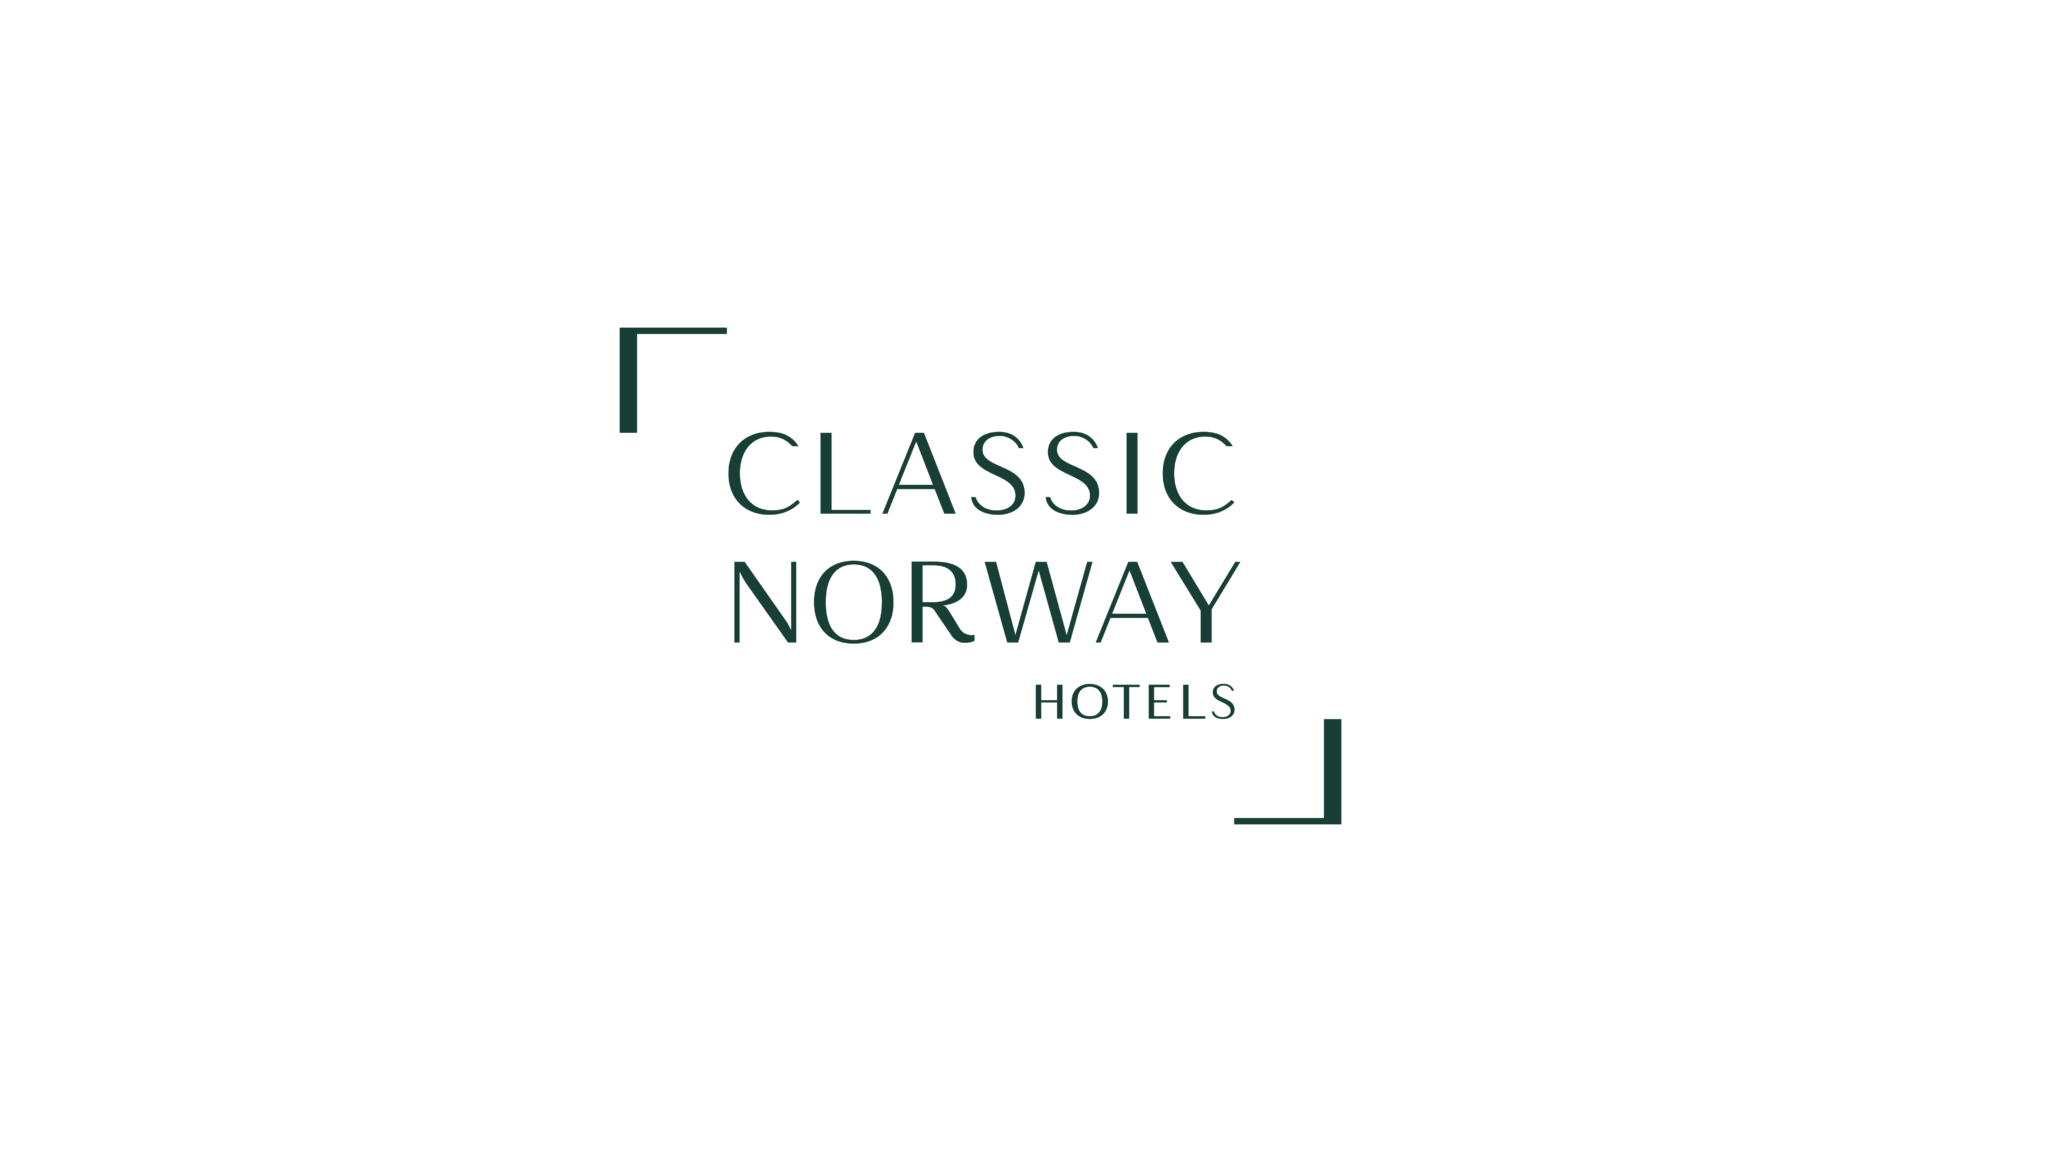 Classic Norway Hotels logo i grønt på hvit bakgrunn